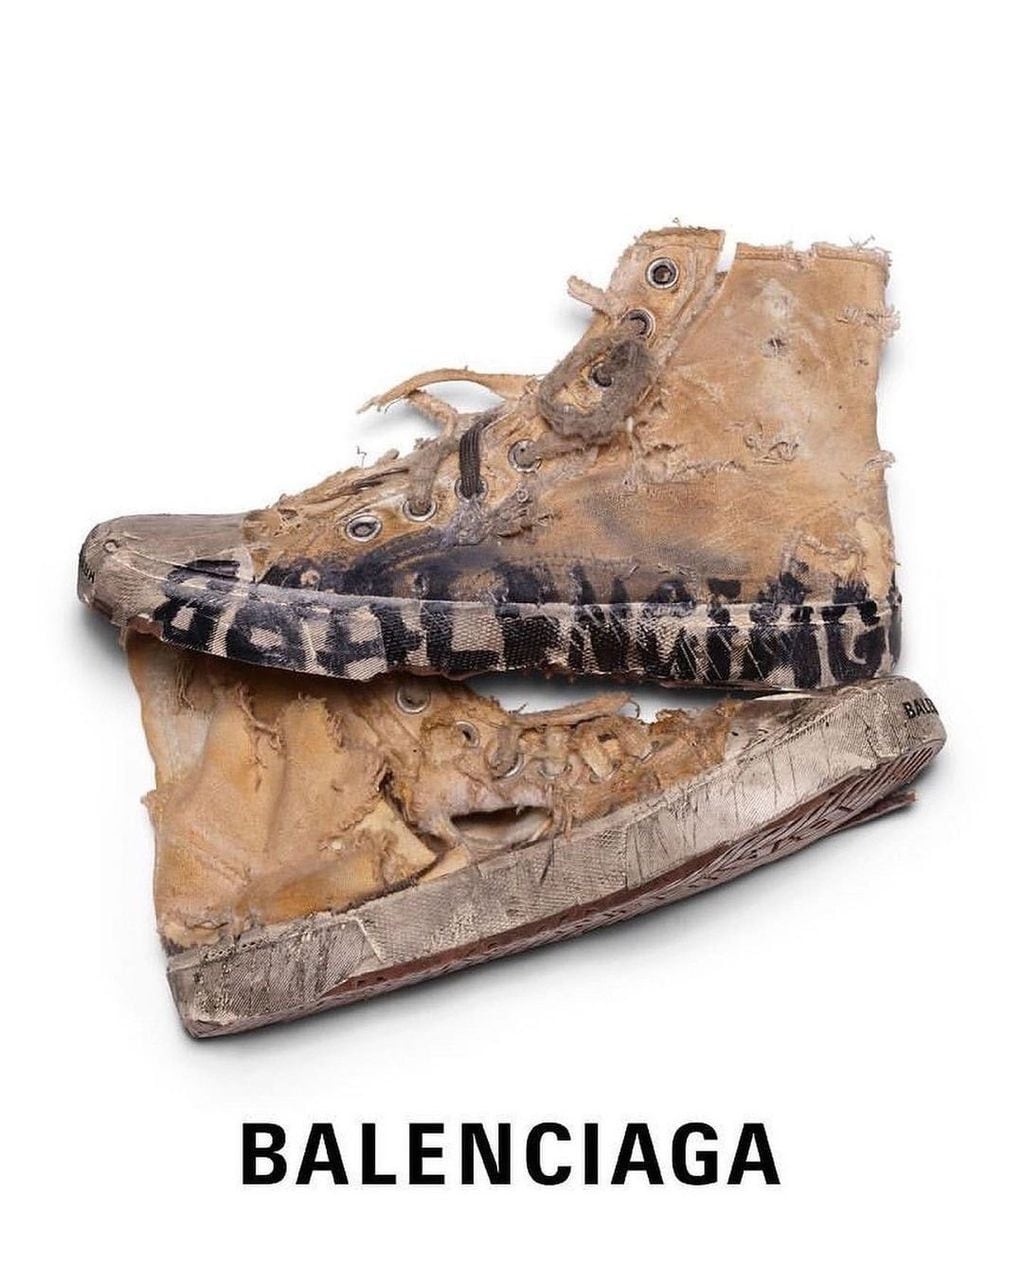 Tras el anuncio de Balenciaga, los zapatos fueron tendencia en las redes.